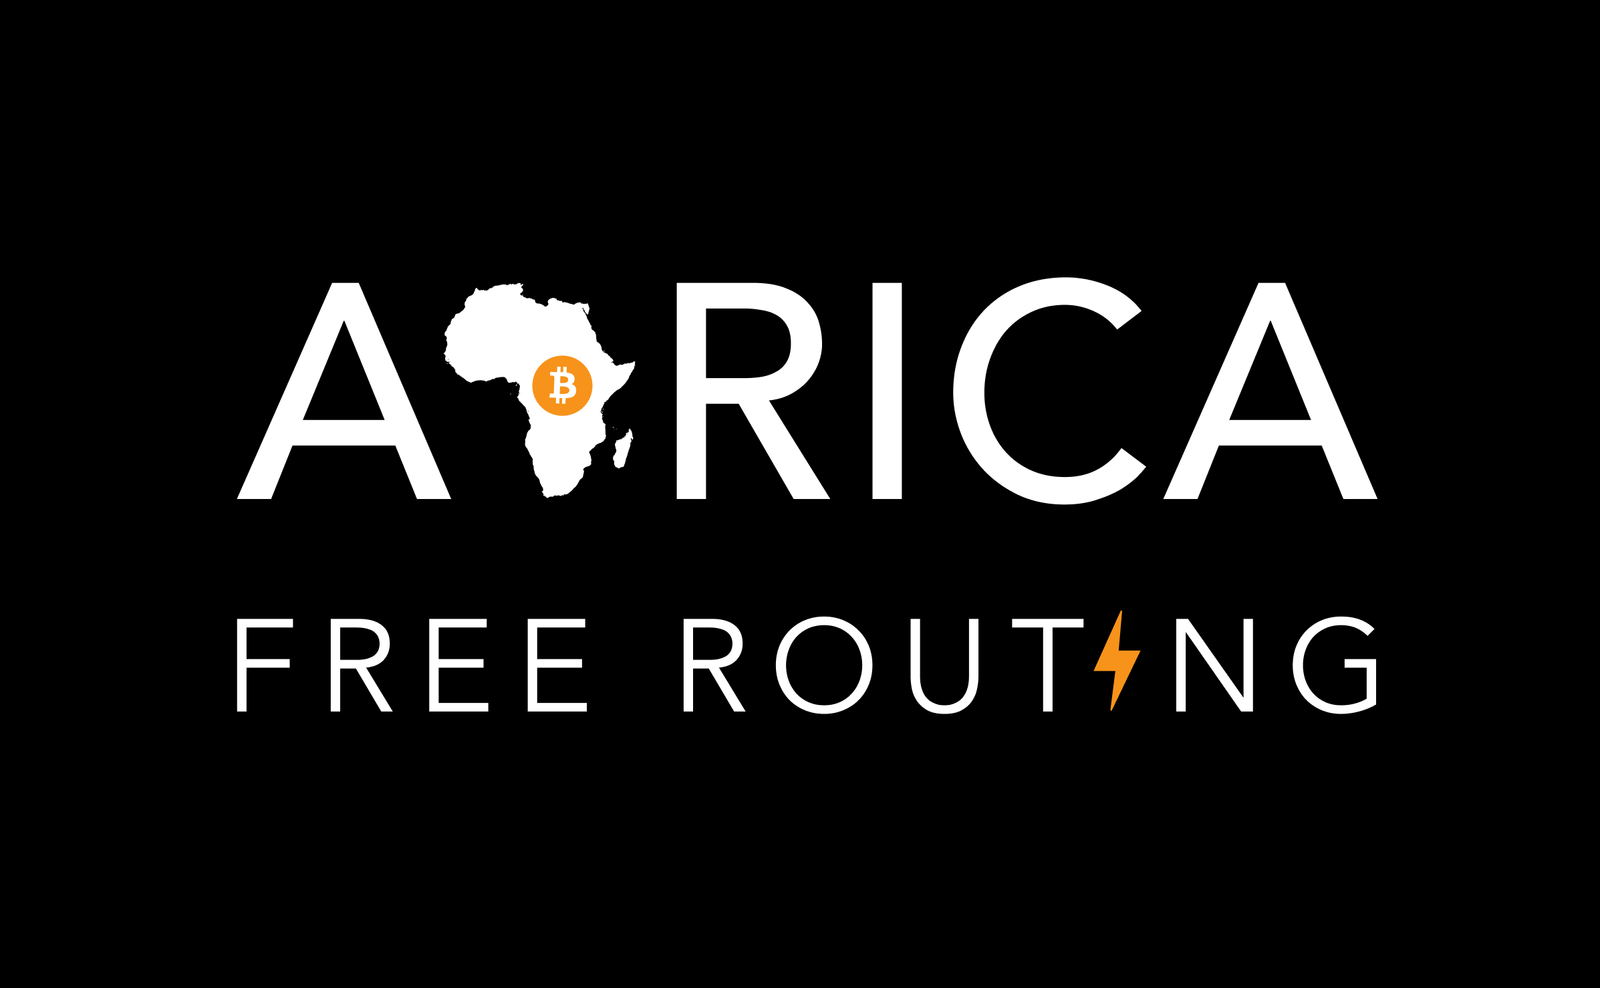 Africa Free Routing logo